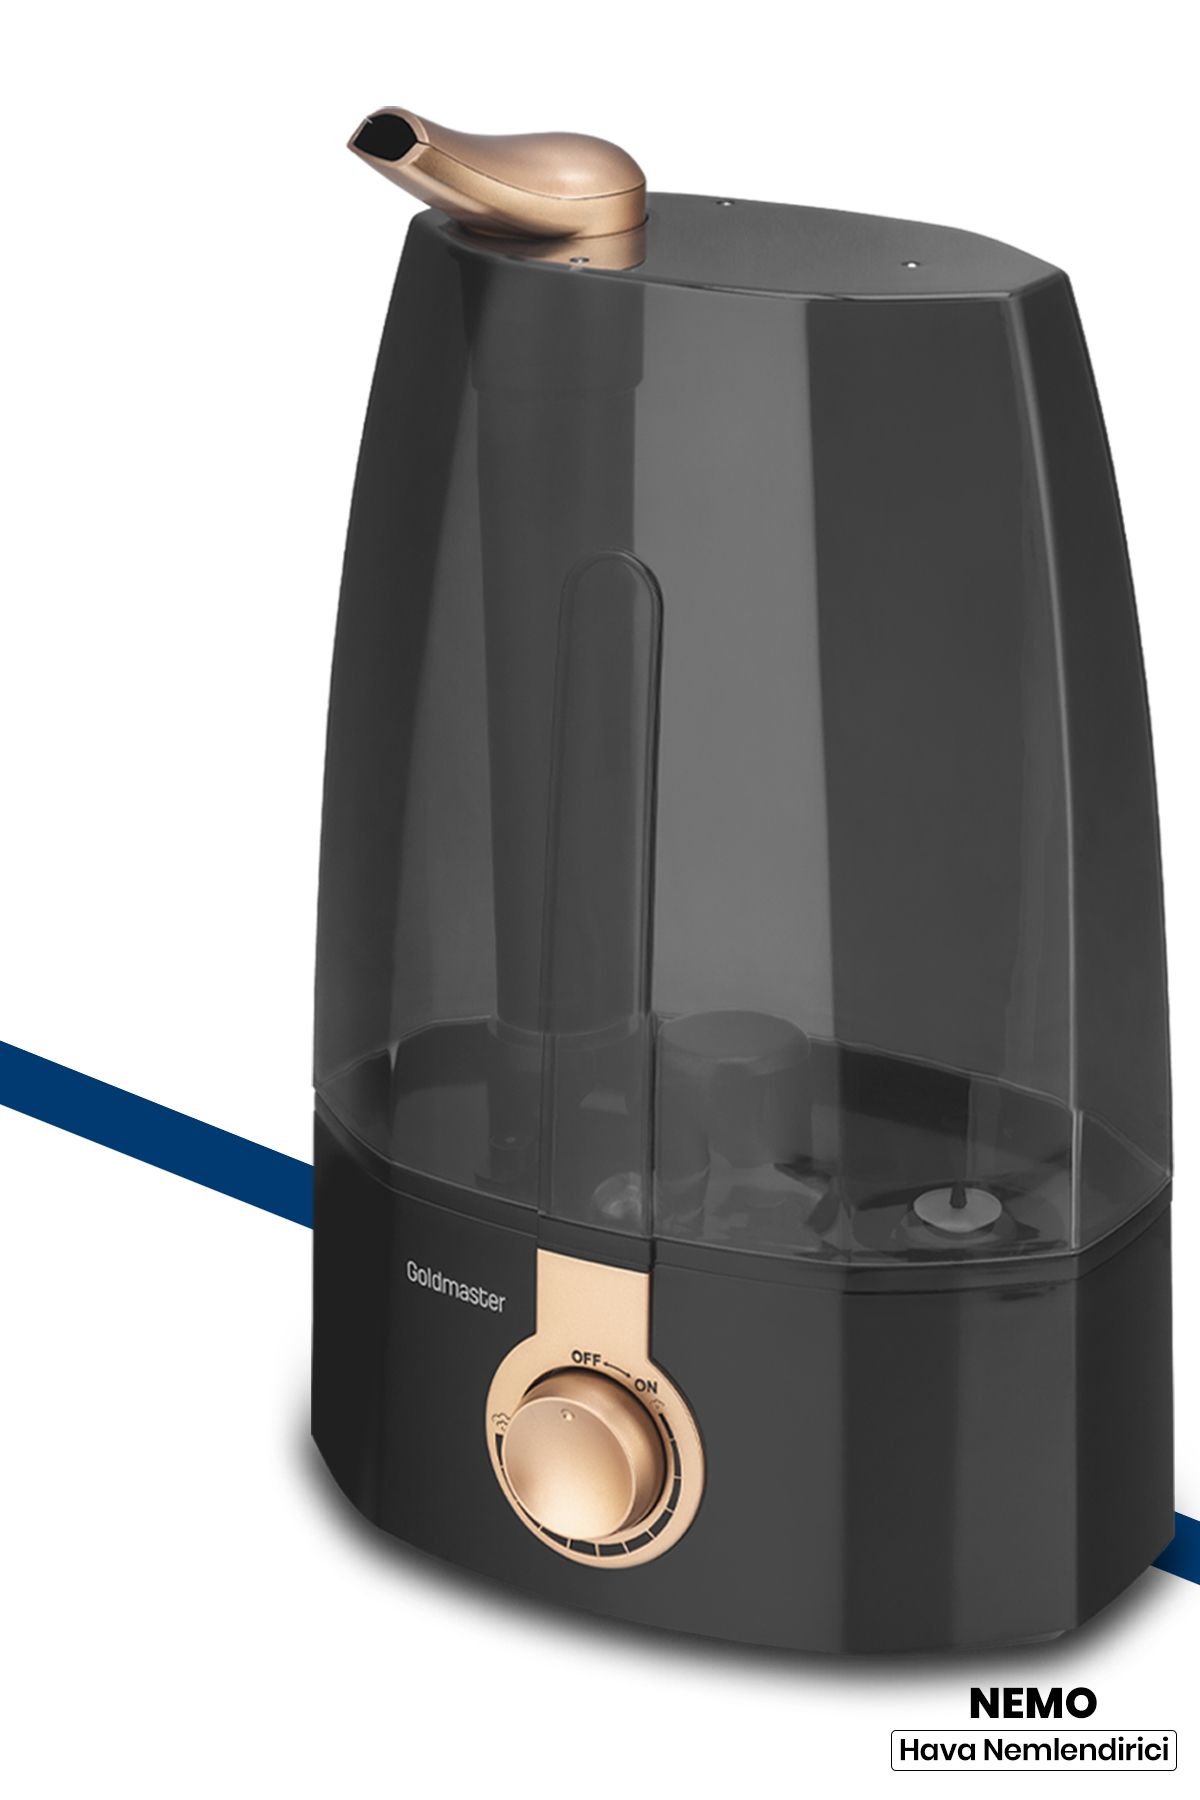 GoldMaster Nemo Ultrasonik Sessiz 3,7l Su Tankı 12 Saat Kesintisiz Buhar Veren Hava Nemlendirme Cihazı